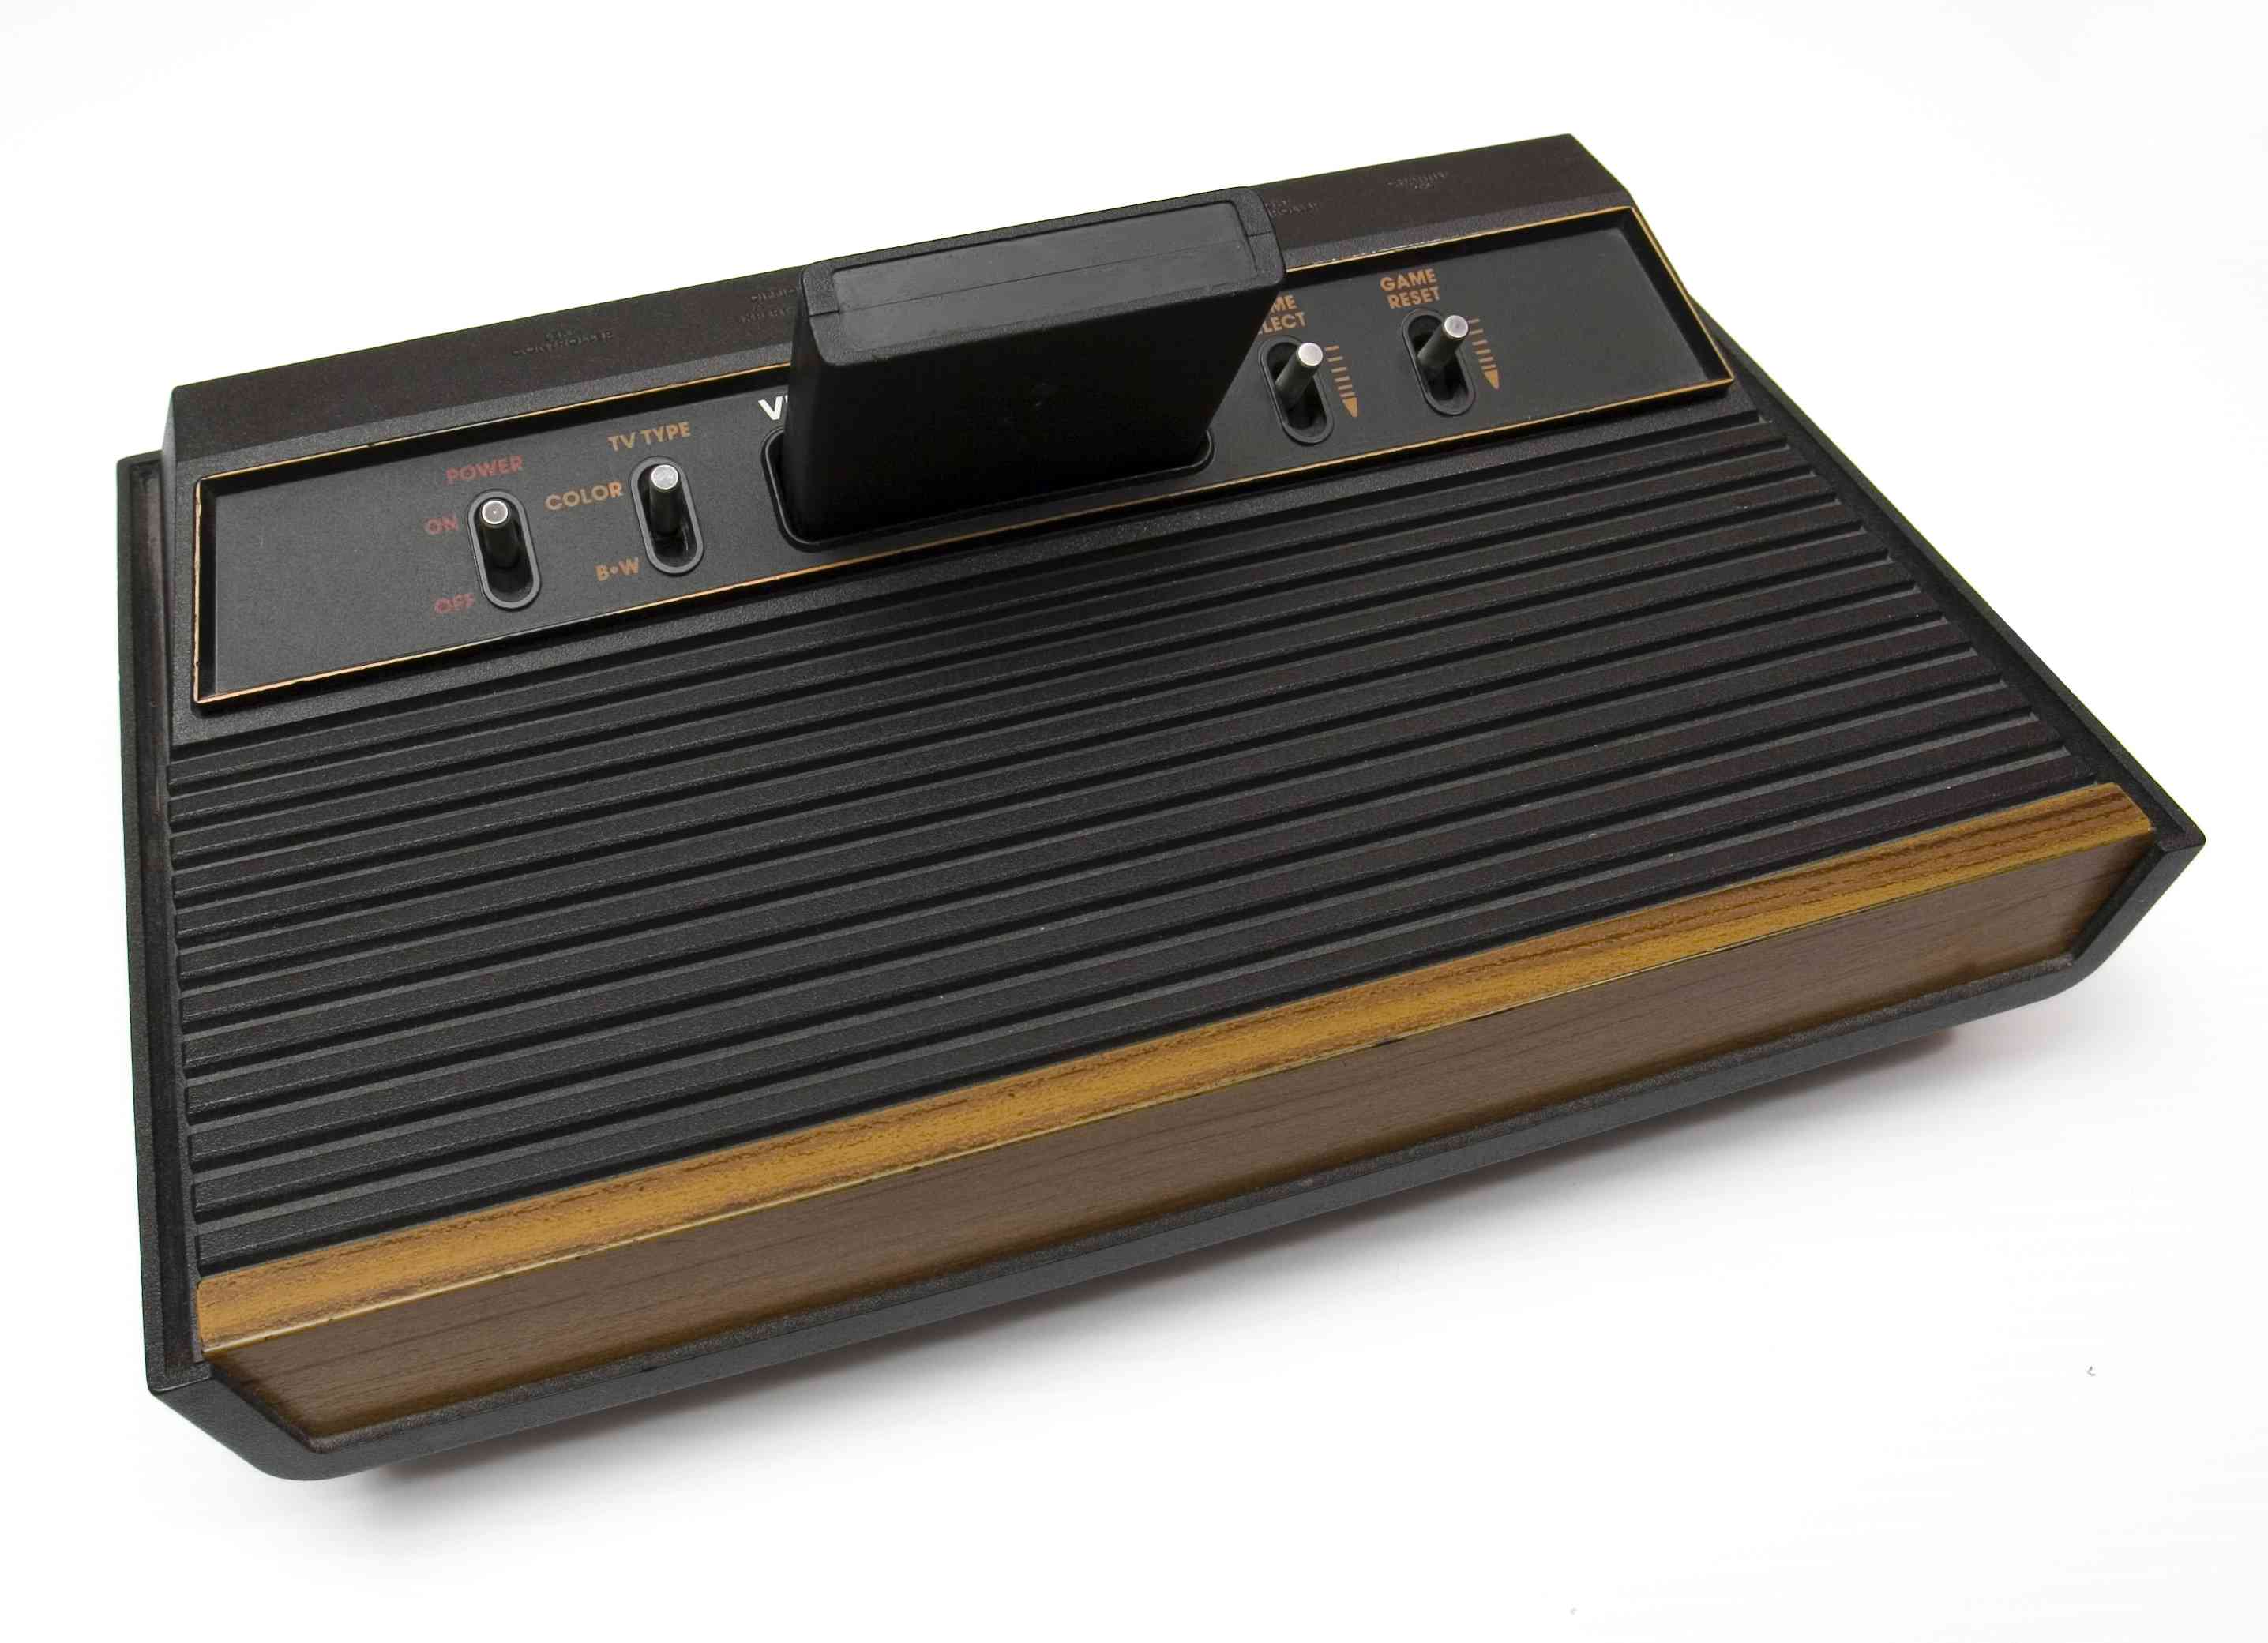 Systém Atari Game.